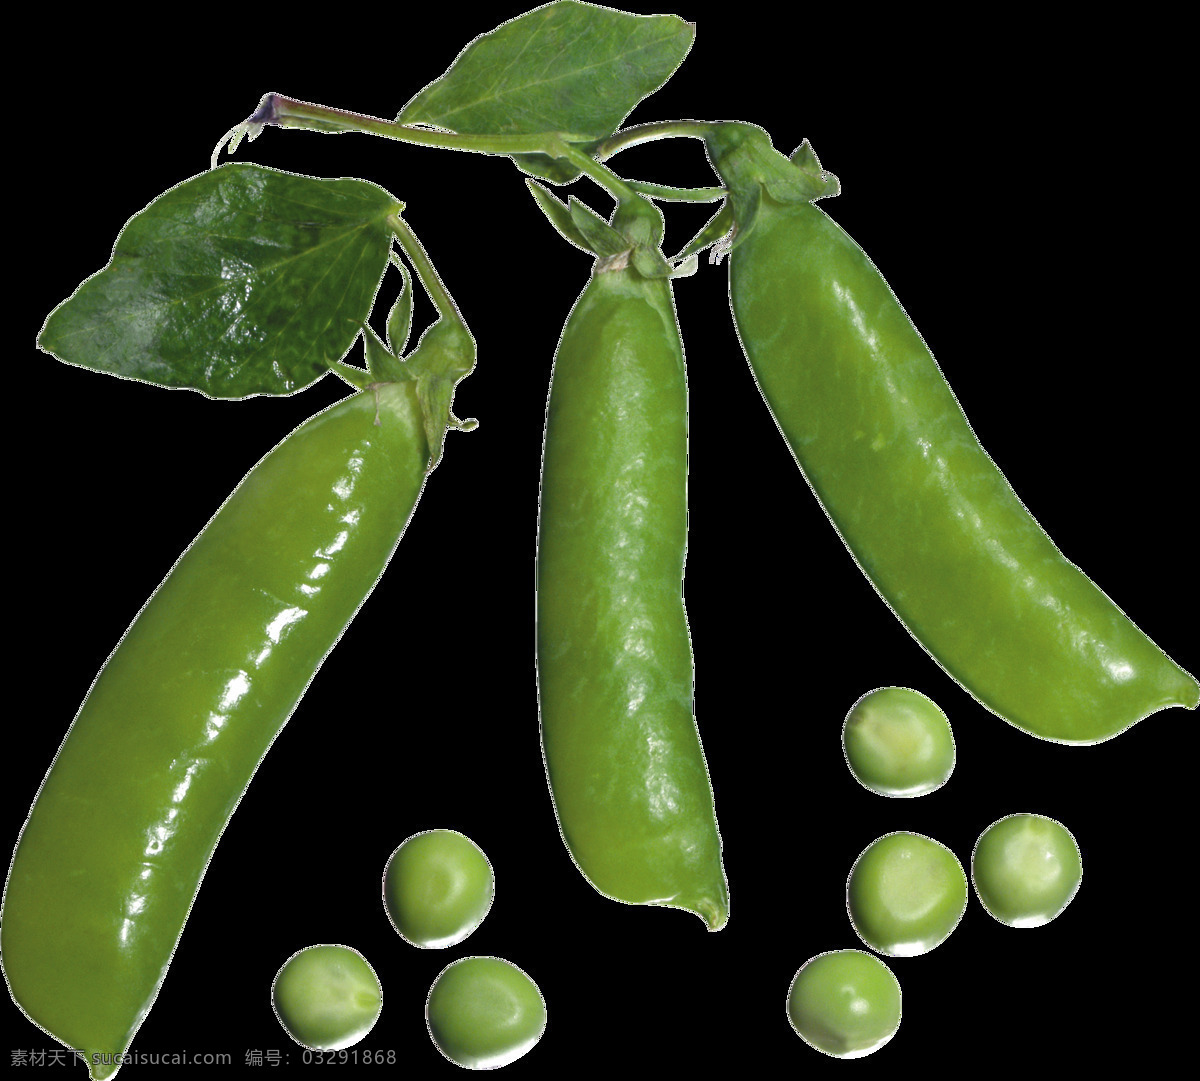 豌豆 豆 青豆 绿色 蔬菜 食物 食材 生物世界 绿色食品 农产品 美食 生活用品 生活百科